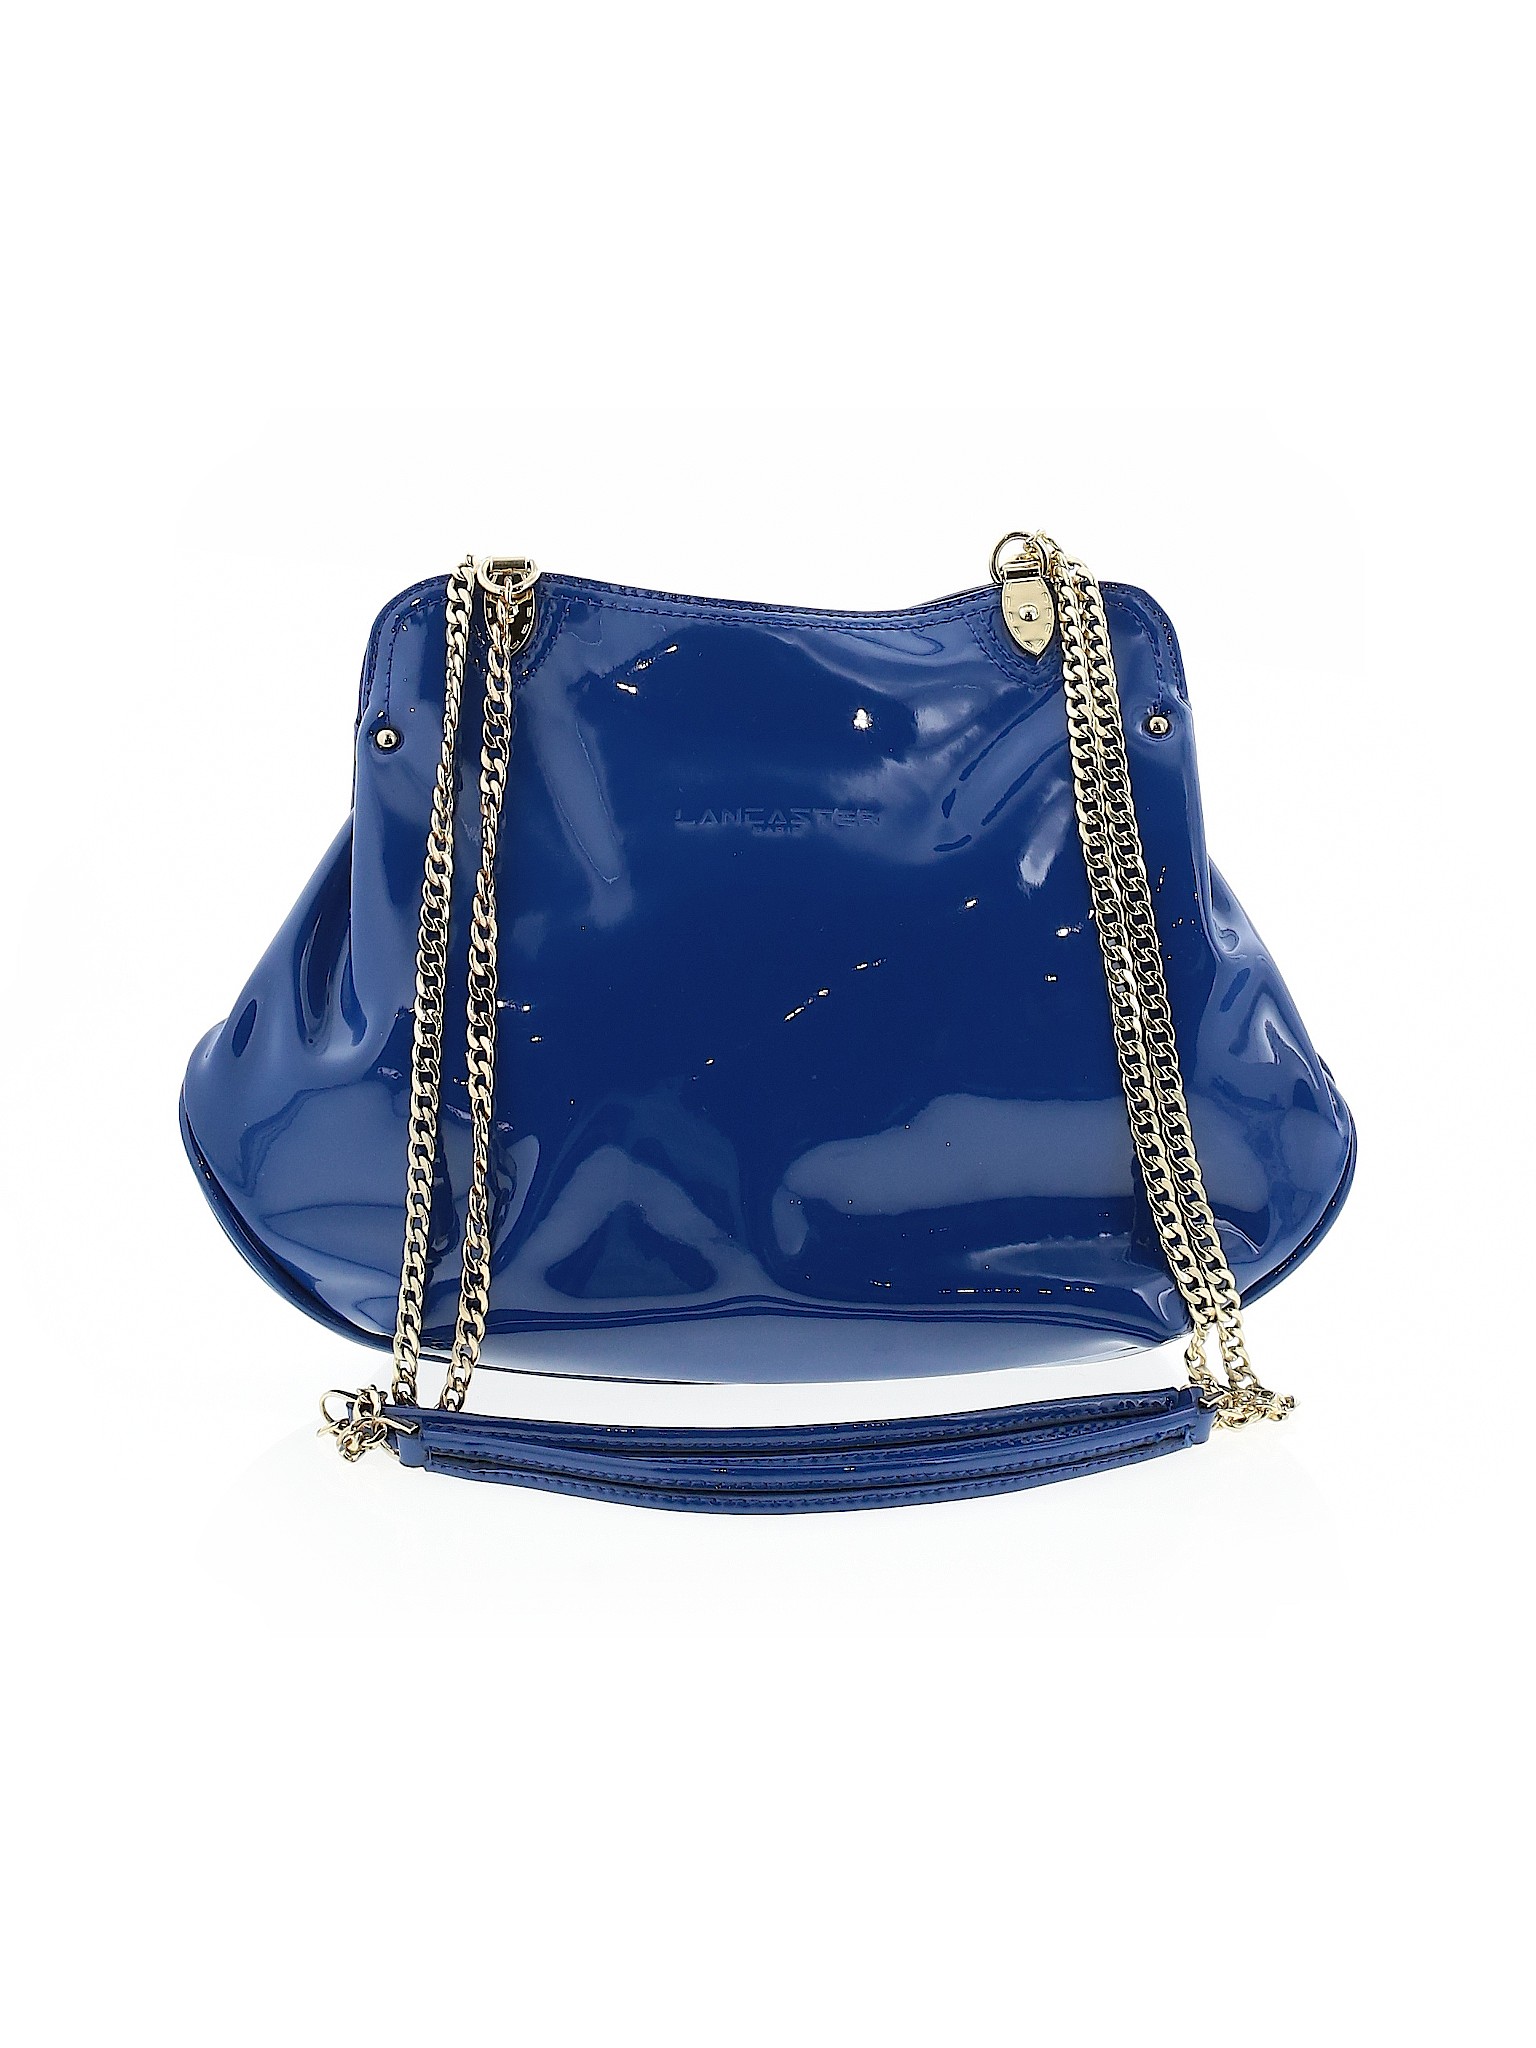 Lancaster Paris Women Blue Shoulder Bag One Size | eBay